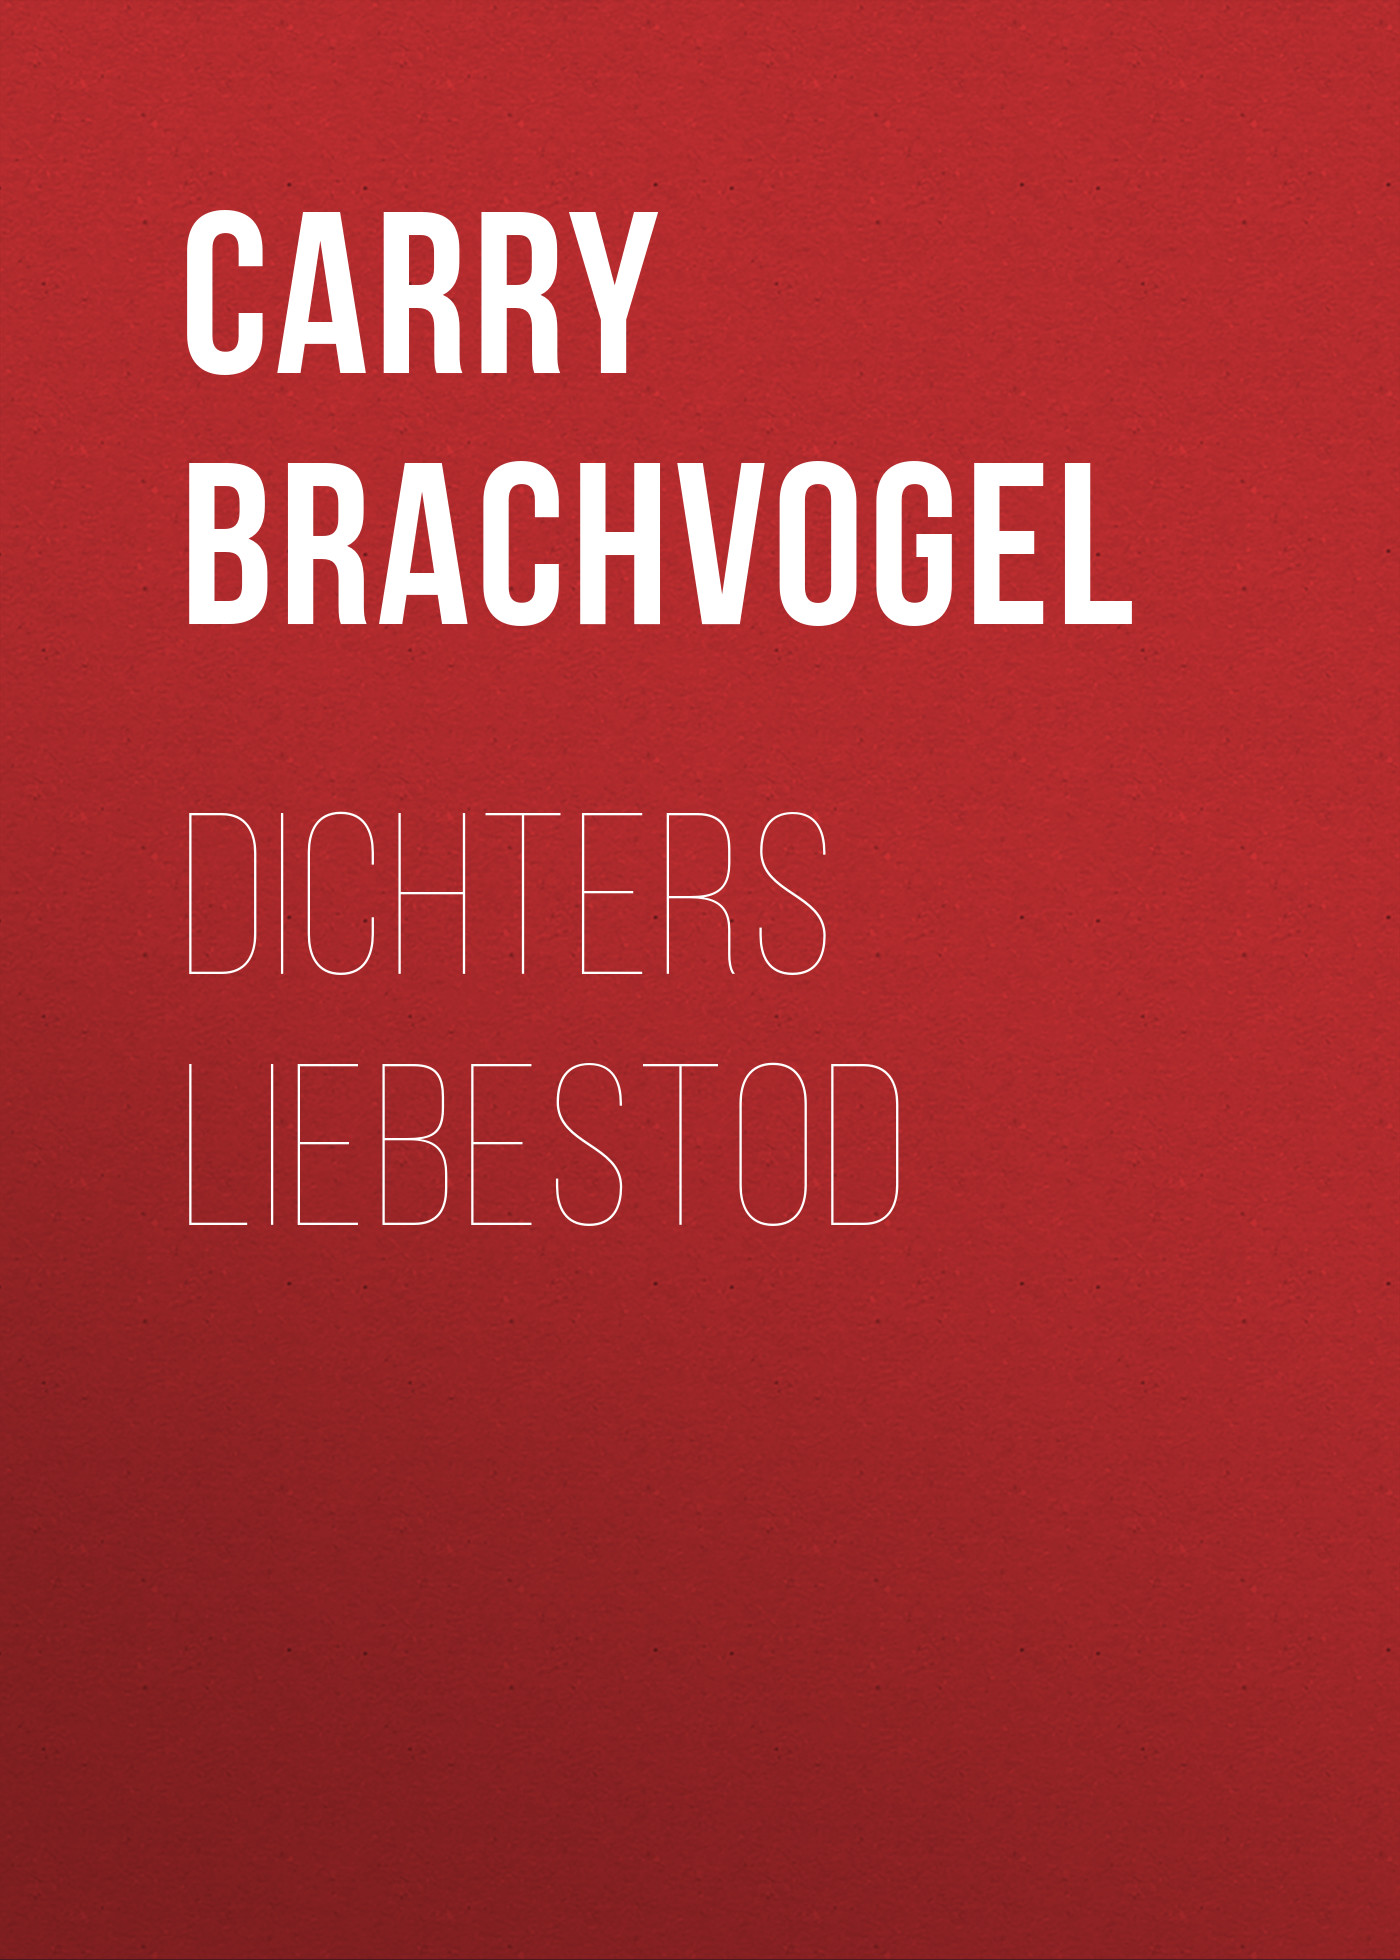 Книга Dichters Liebestod из серии , созданная Carry Brachvogel, может относится к жанру Зарубежная классика. Стоимость электронной книги Dichters Liebestod с идентификатором 48633060 составляет 0 руб.